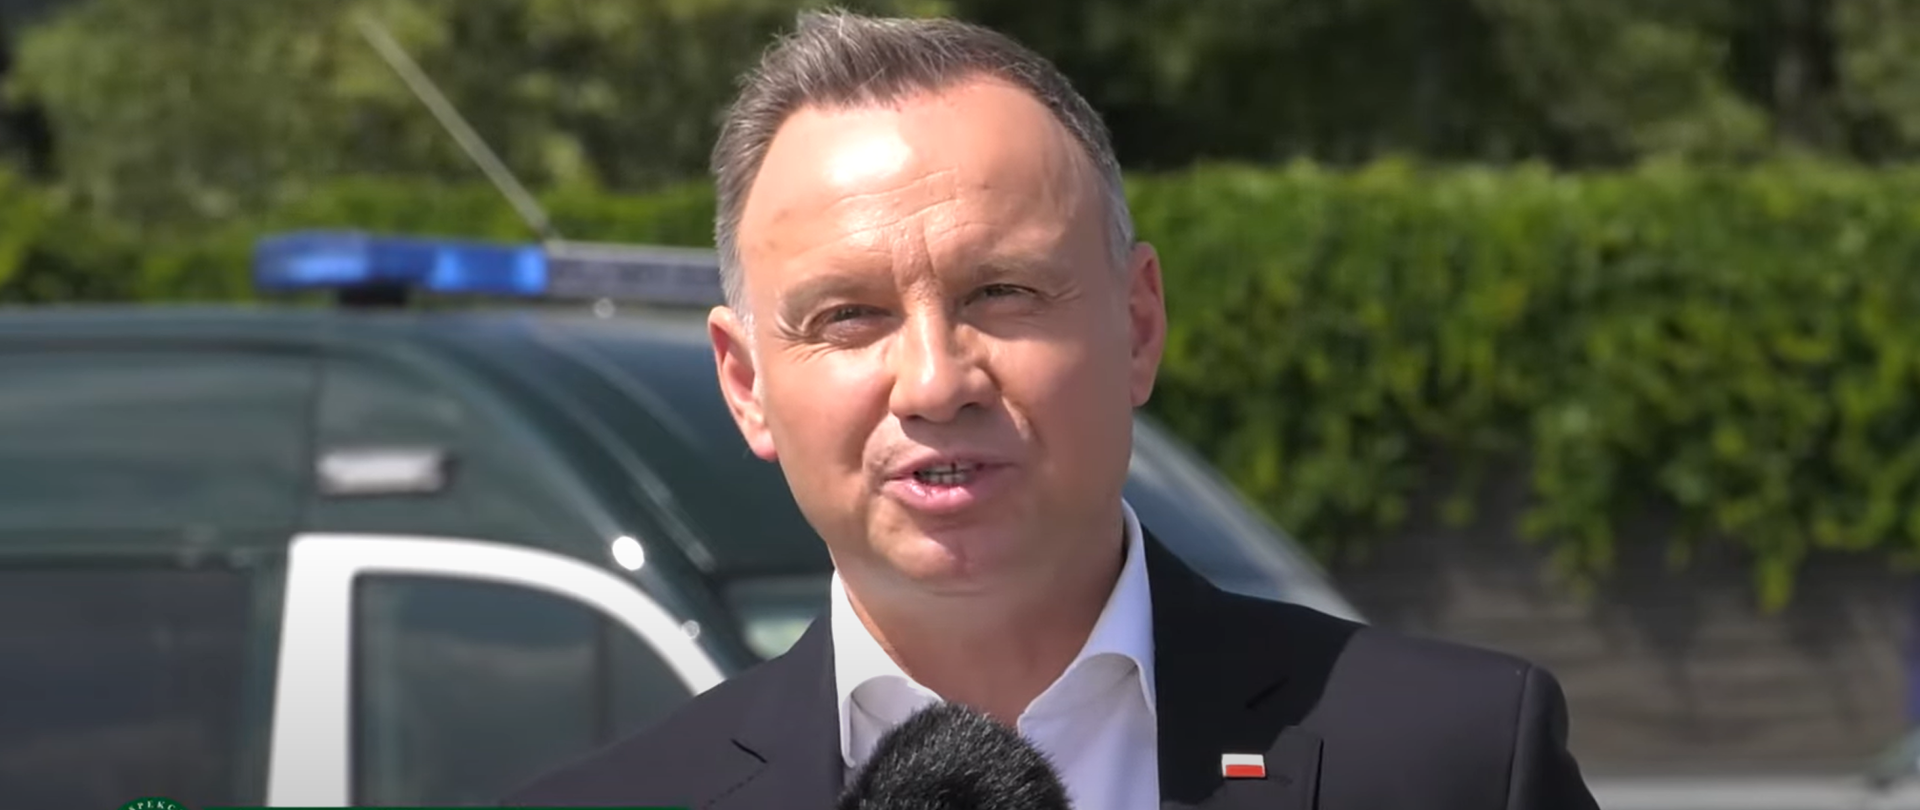 Prezydent RP Andrzej Duda na punkcie kontrolnym ITD w Morawicy w Małopolsce